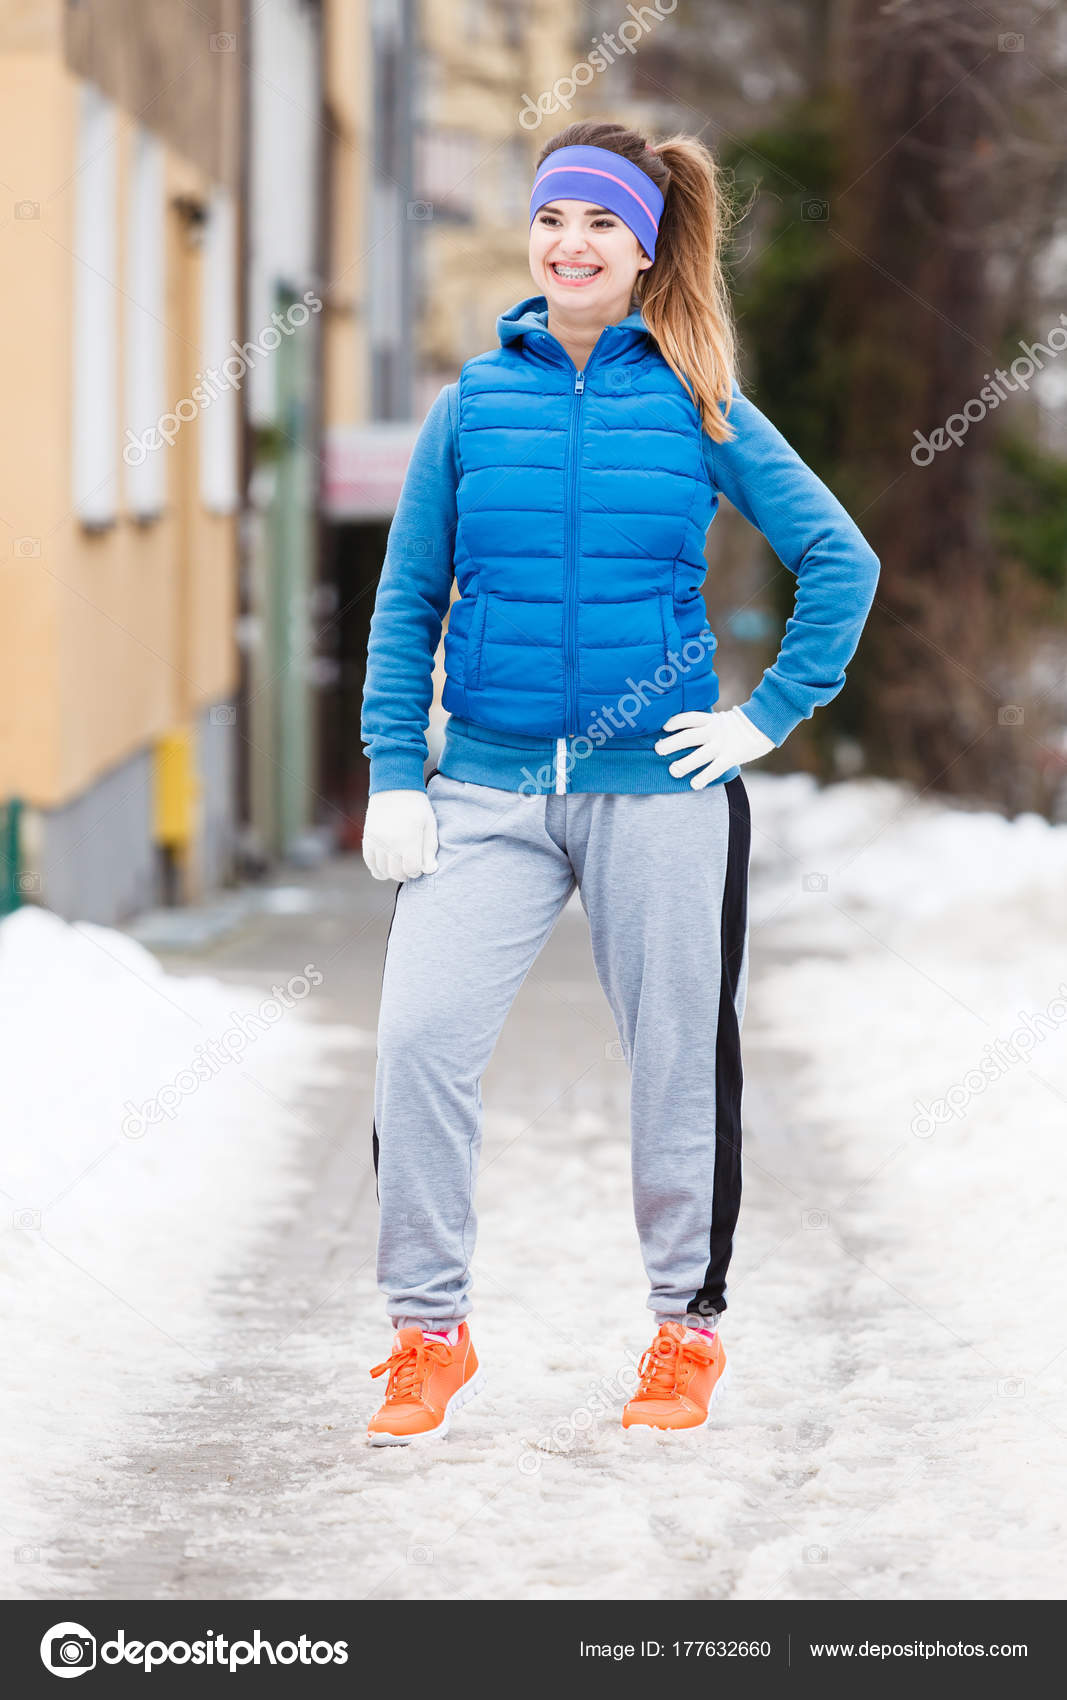 Escultura Por favor En cantidad Mujer con ropa deportiva ejercitándose al aire libre durante el invierno:  fotografía de stock © Voyagerix #177632660 | Depositphotos